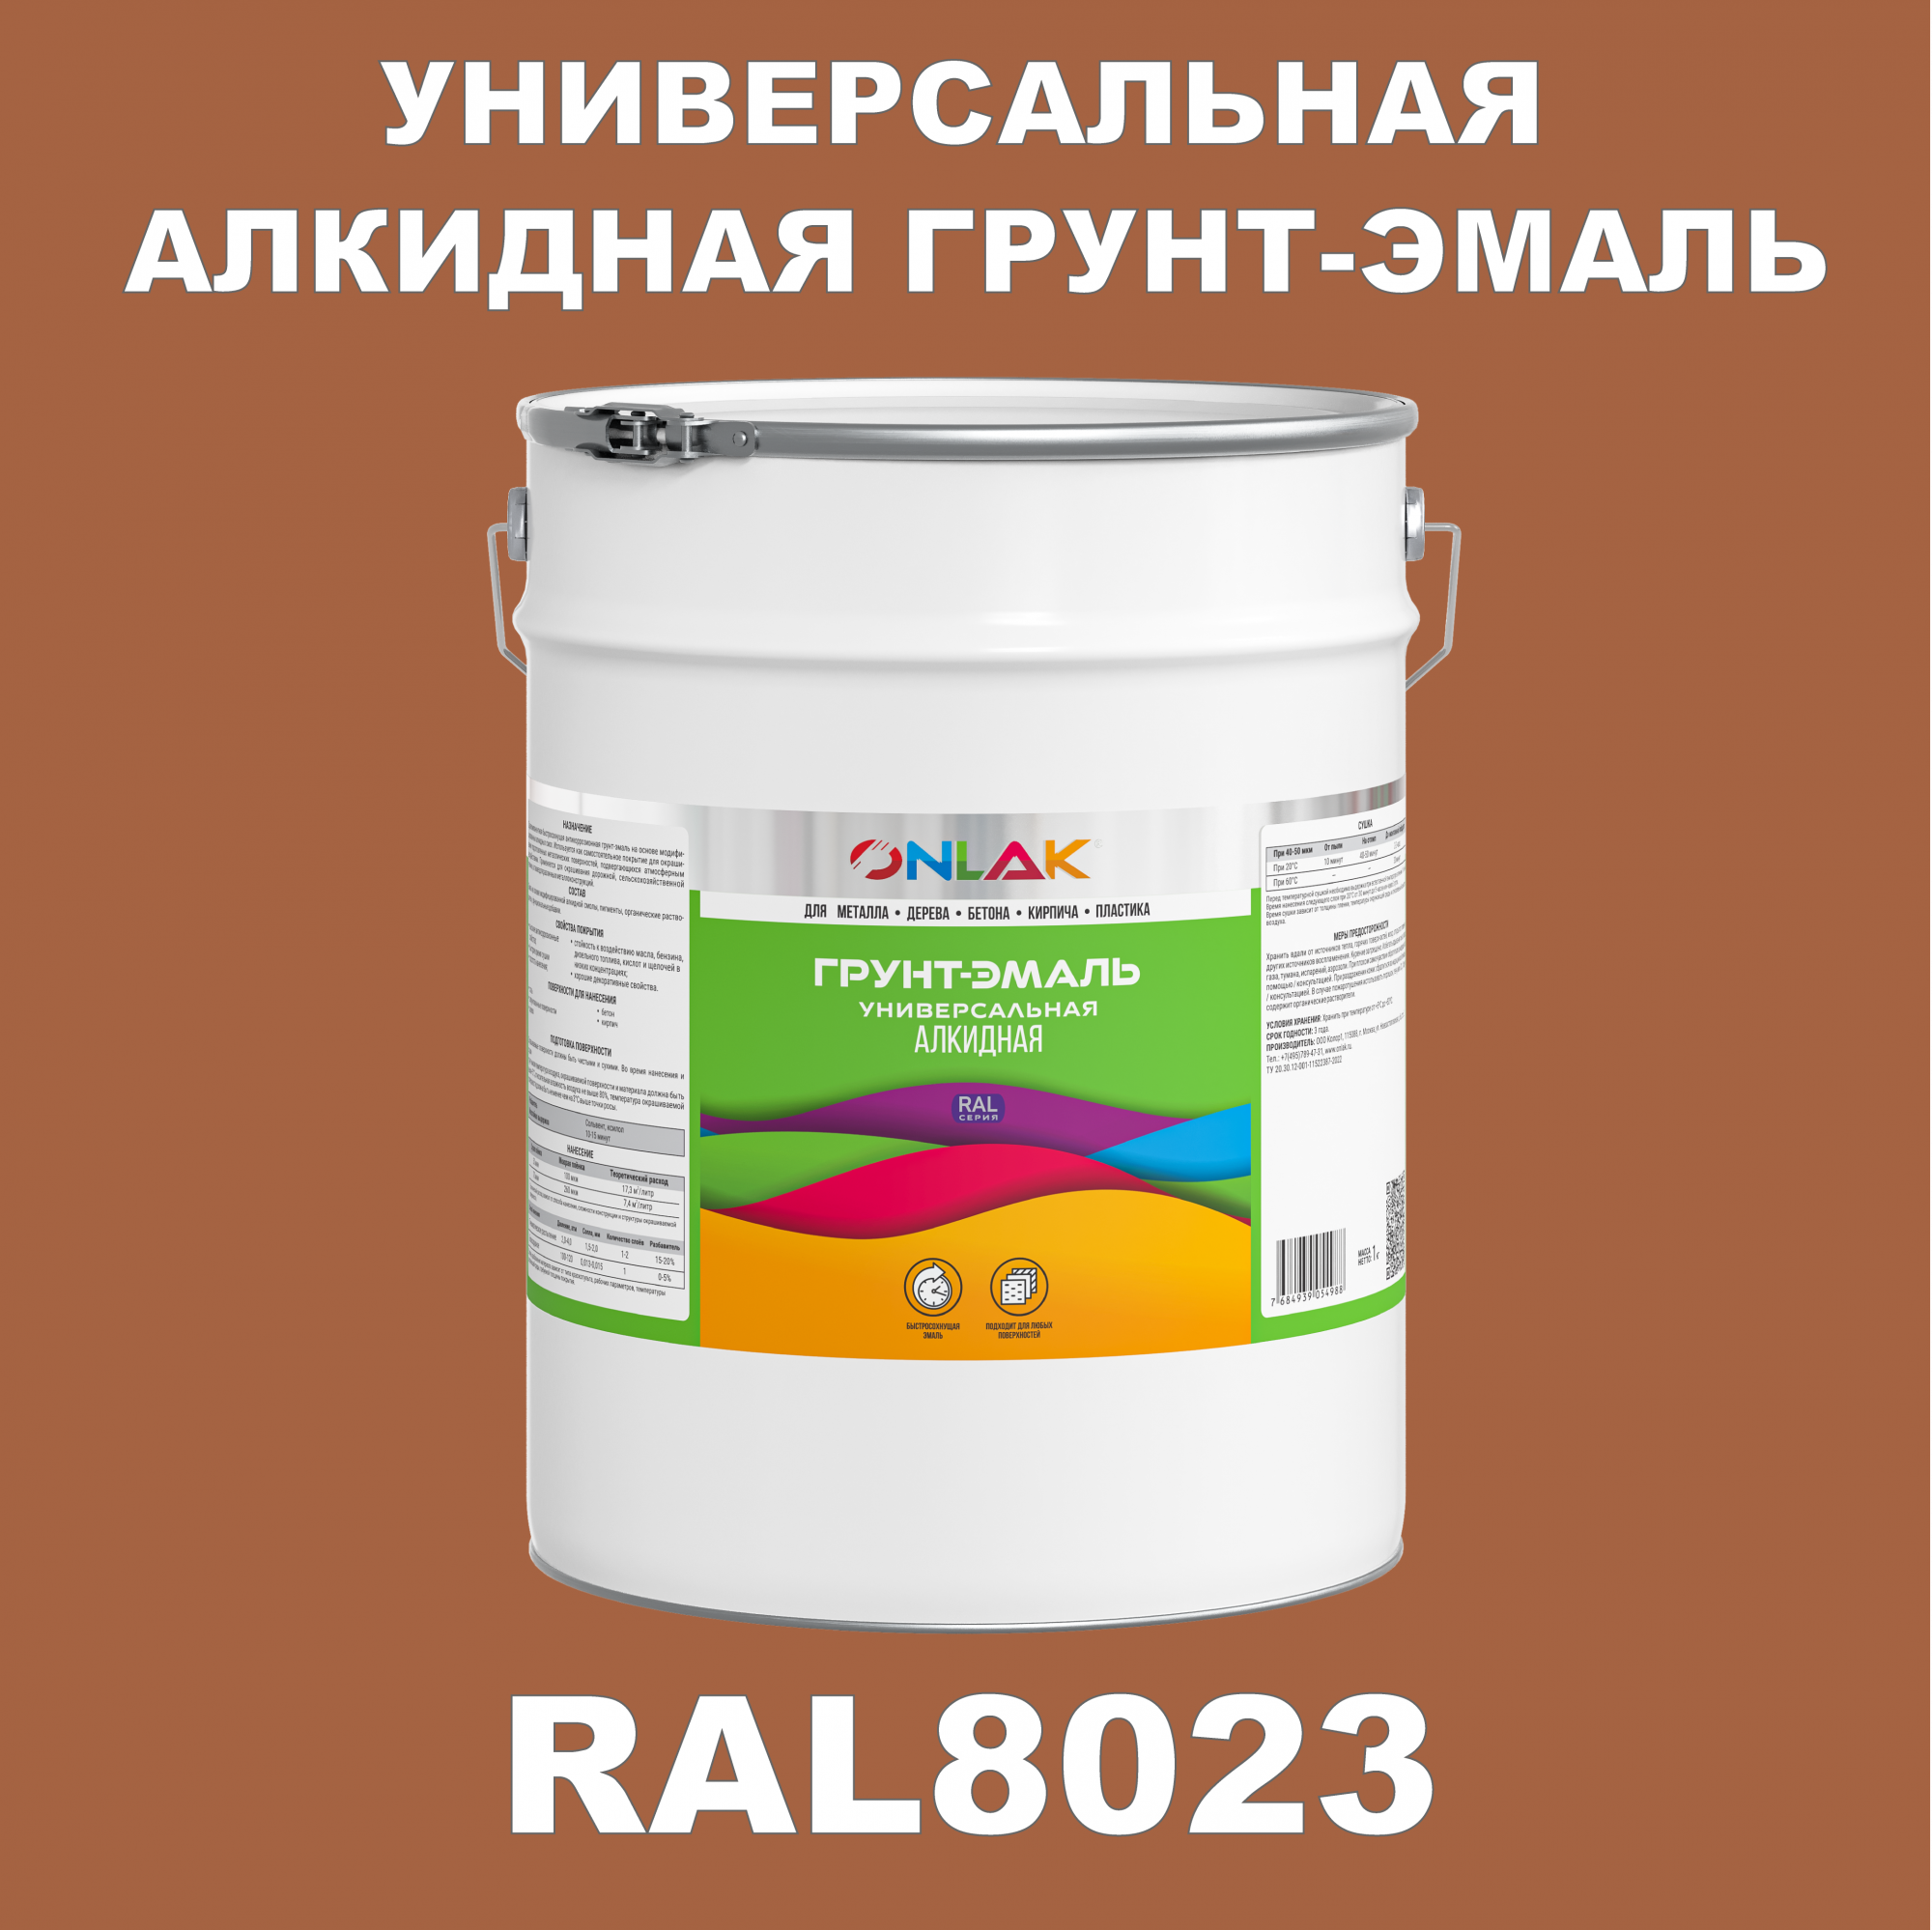 Грунт-эмаль ONLAK 1К RAL8023 антикоррозионная алкидная по металлу по ржавчине 20 кг грунт эмаль neomid по ржавчине быстросохнущая алкидная серая 0 9 кг